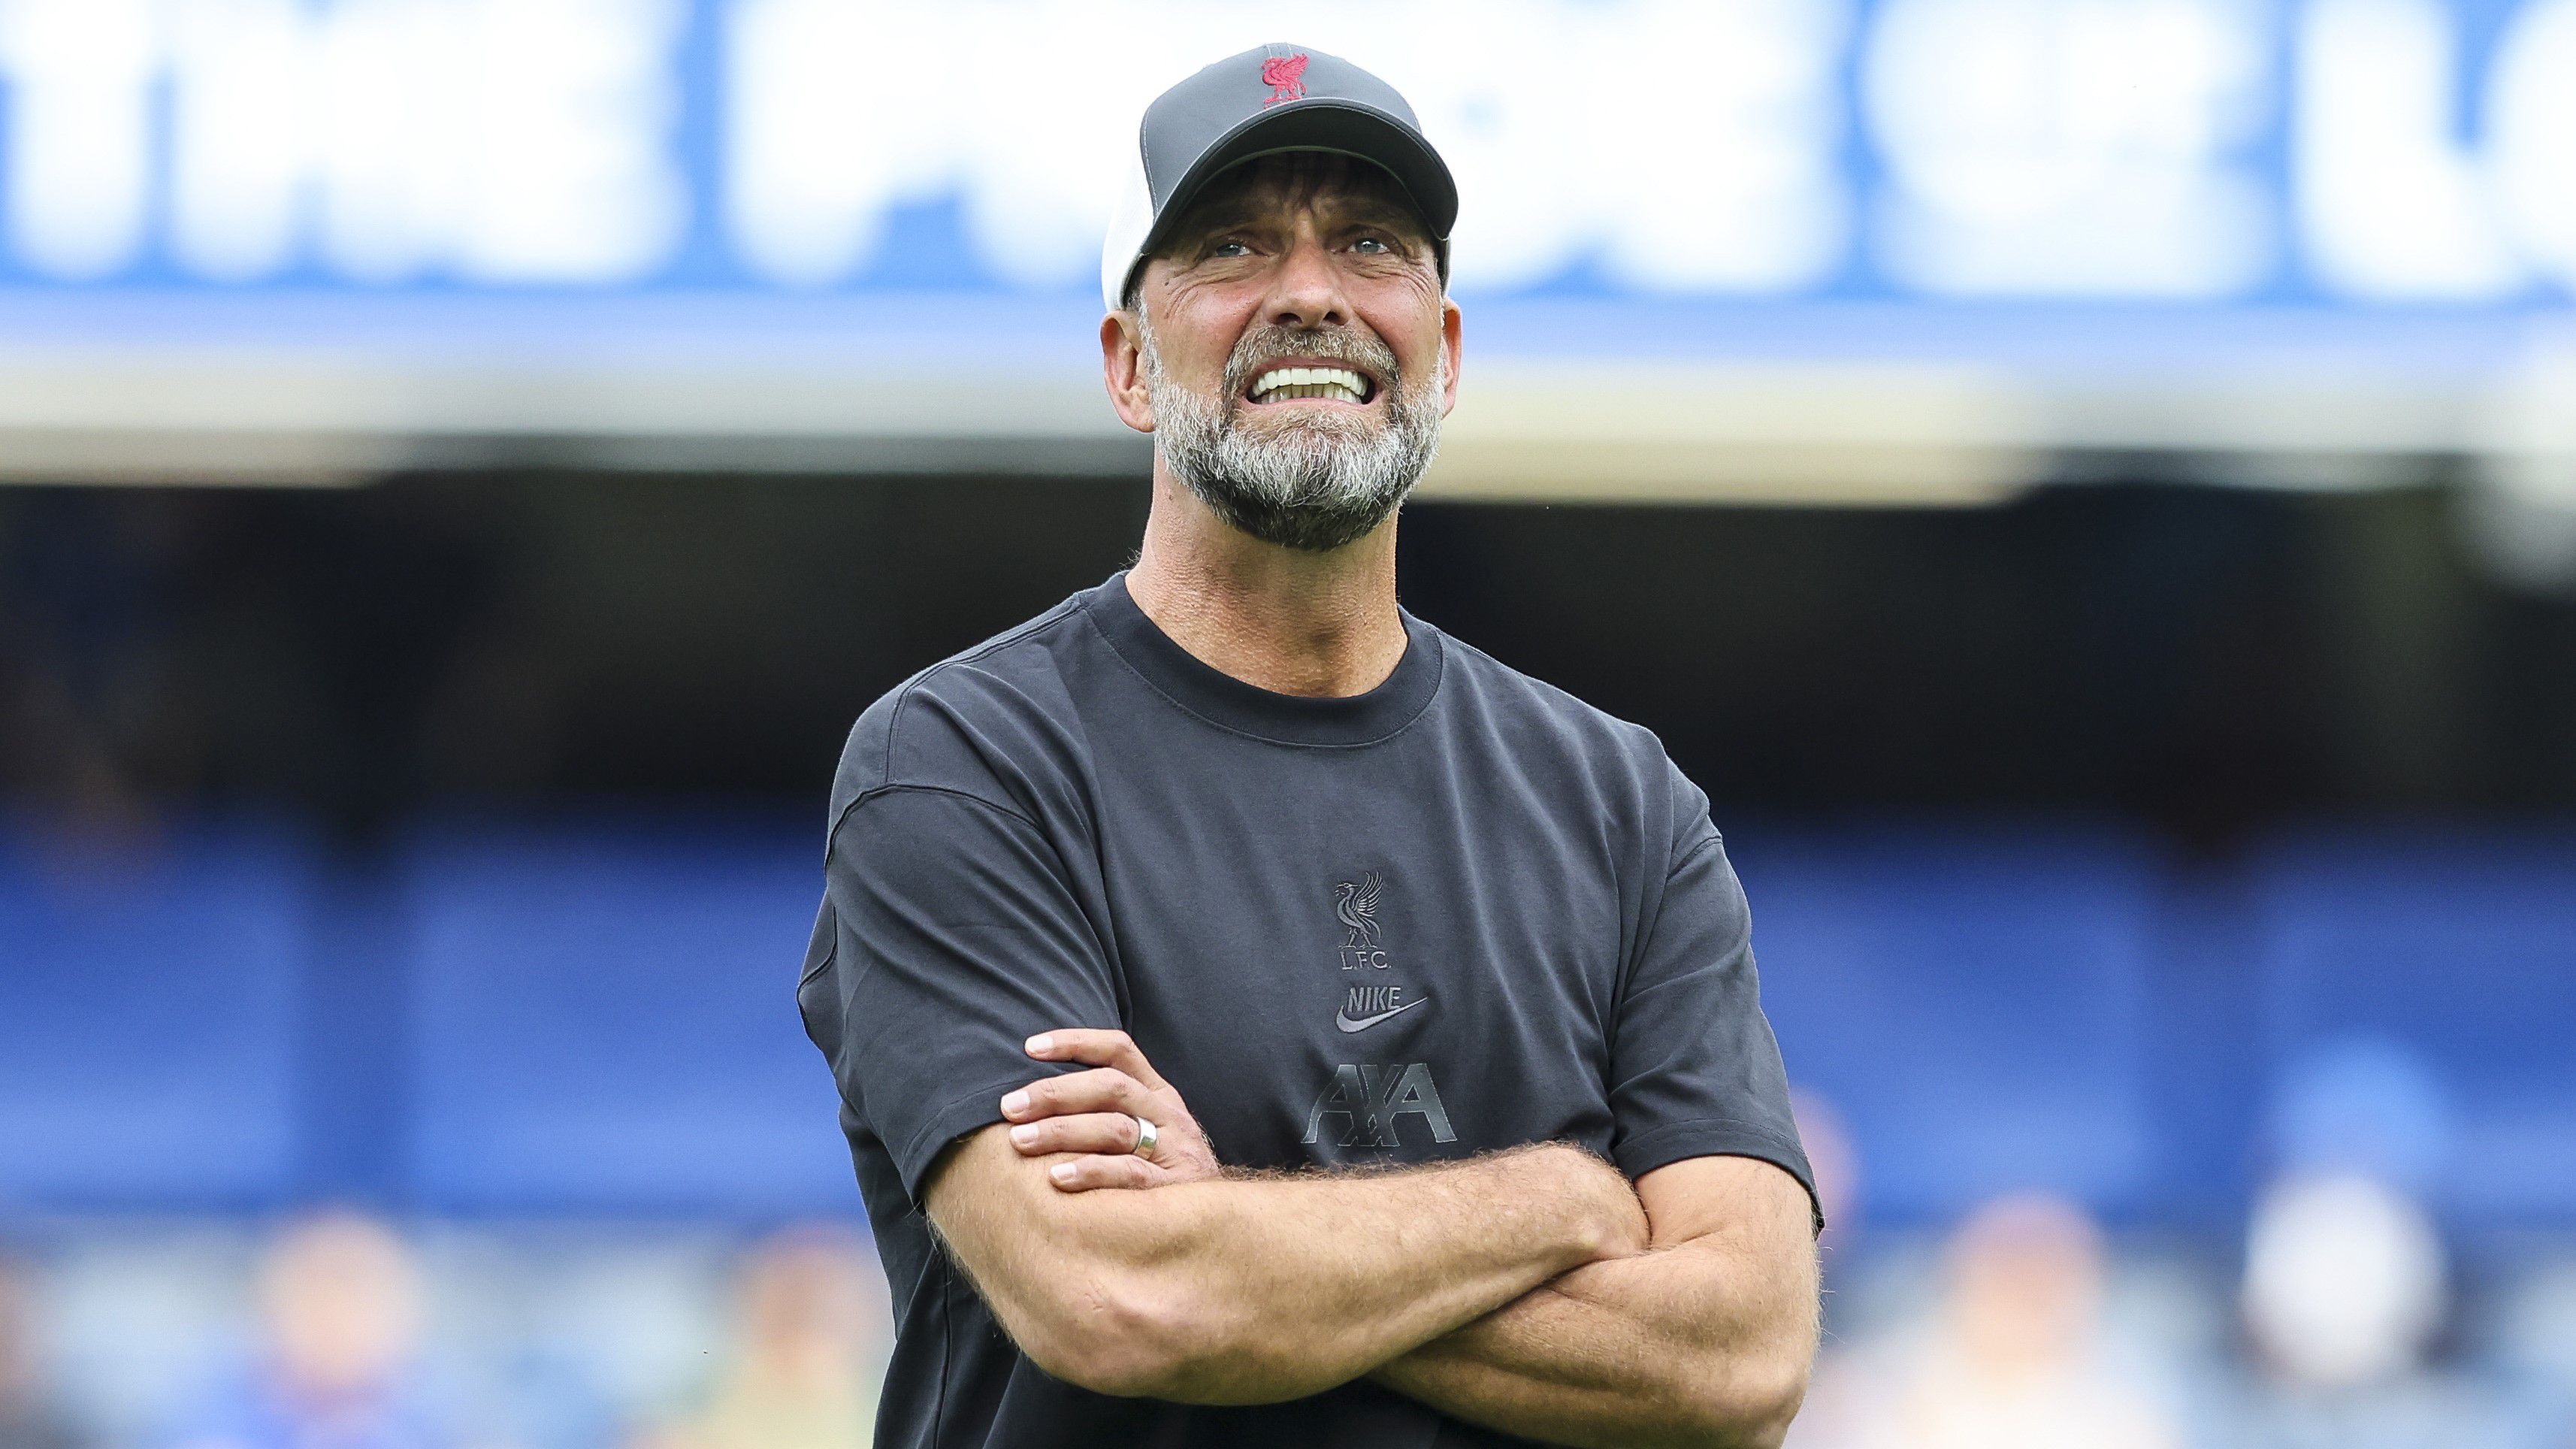 A Liverpoolt irányító Jürgen Klopp szerint mindkét együttes nyerhetett volna a Stamford Bridge-en, és összességében nem volt elégedetlen a döntetlennel